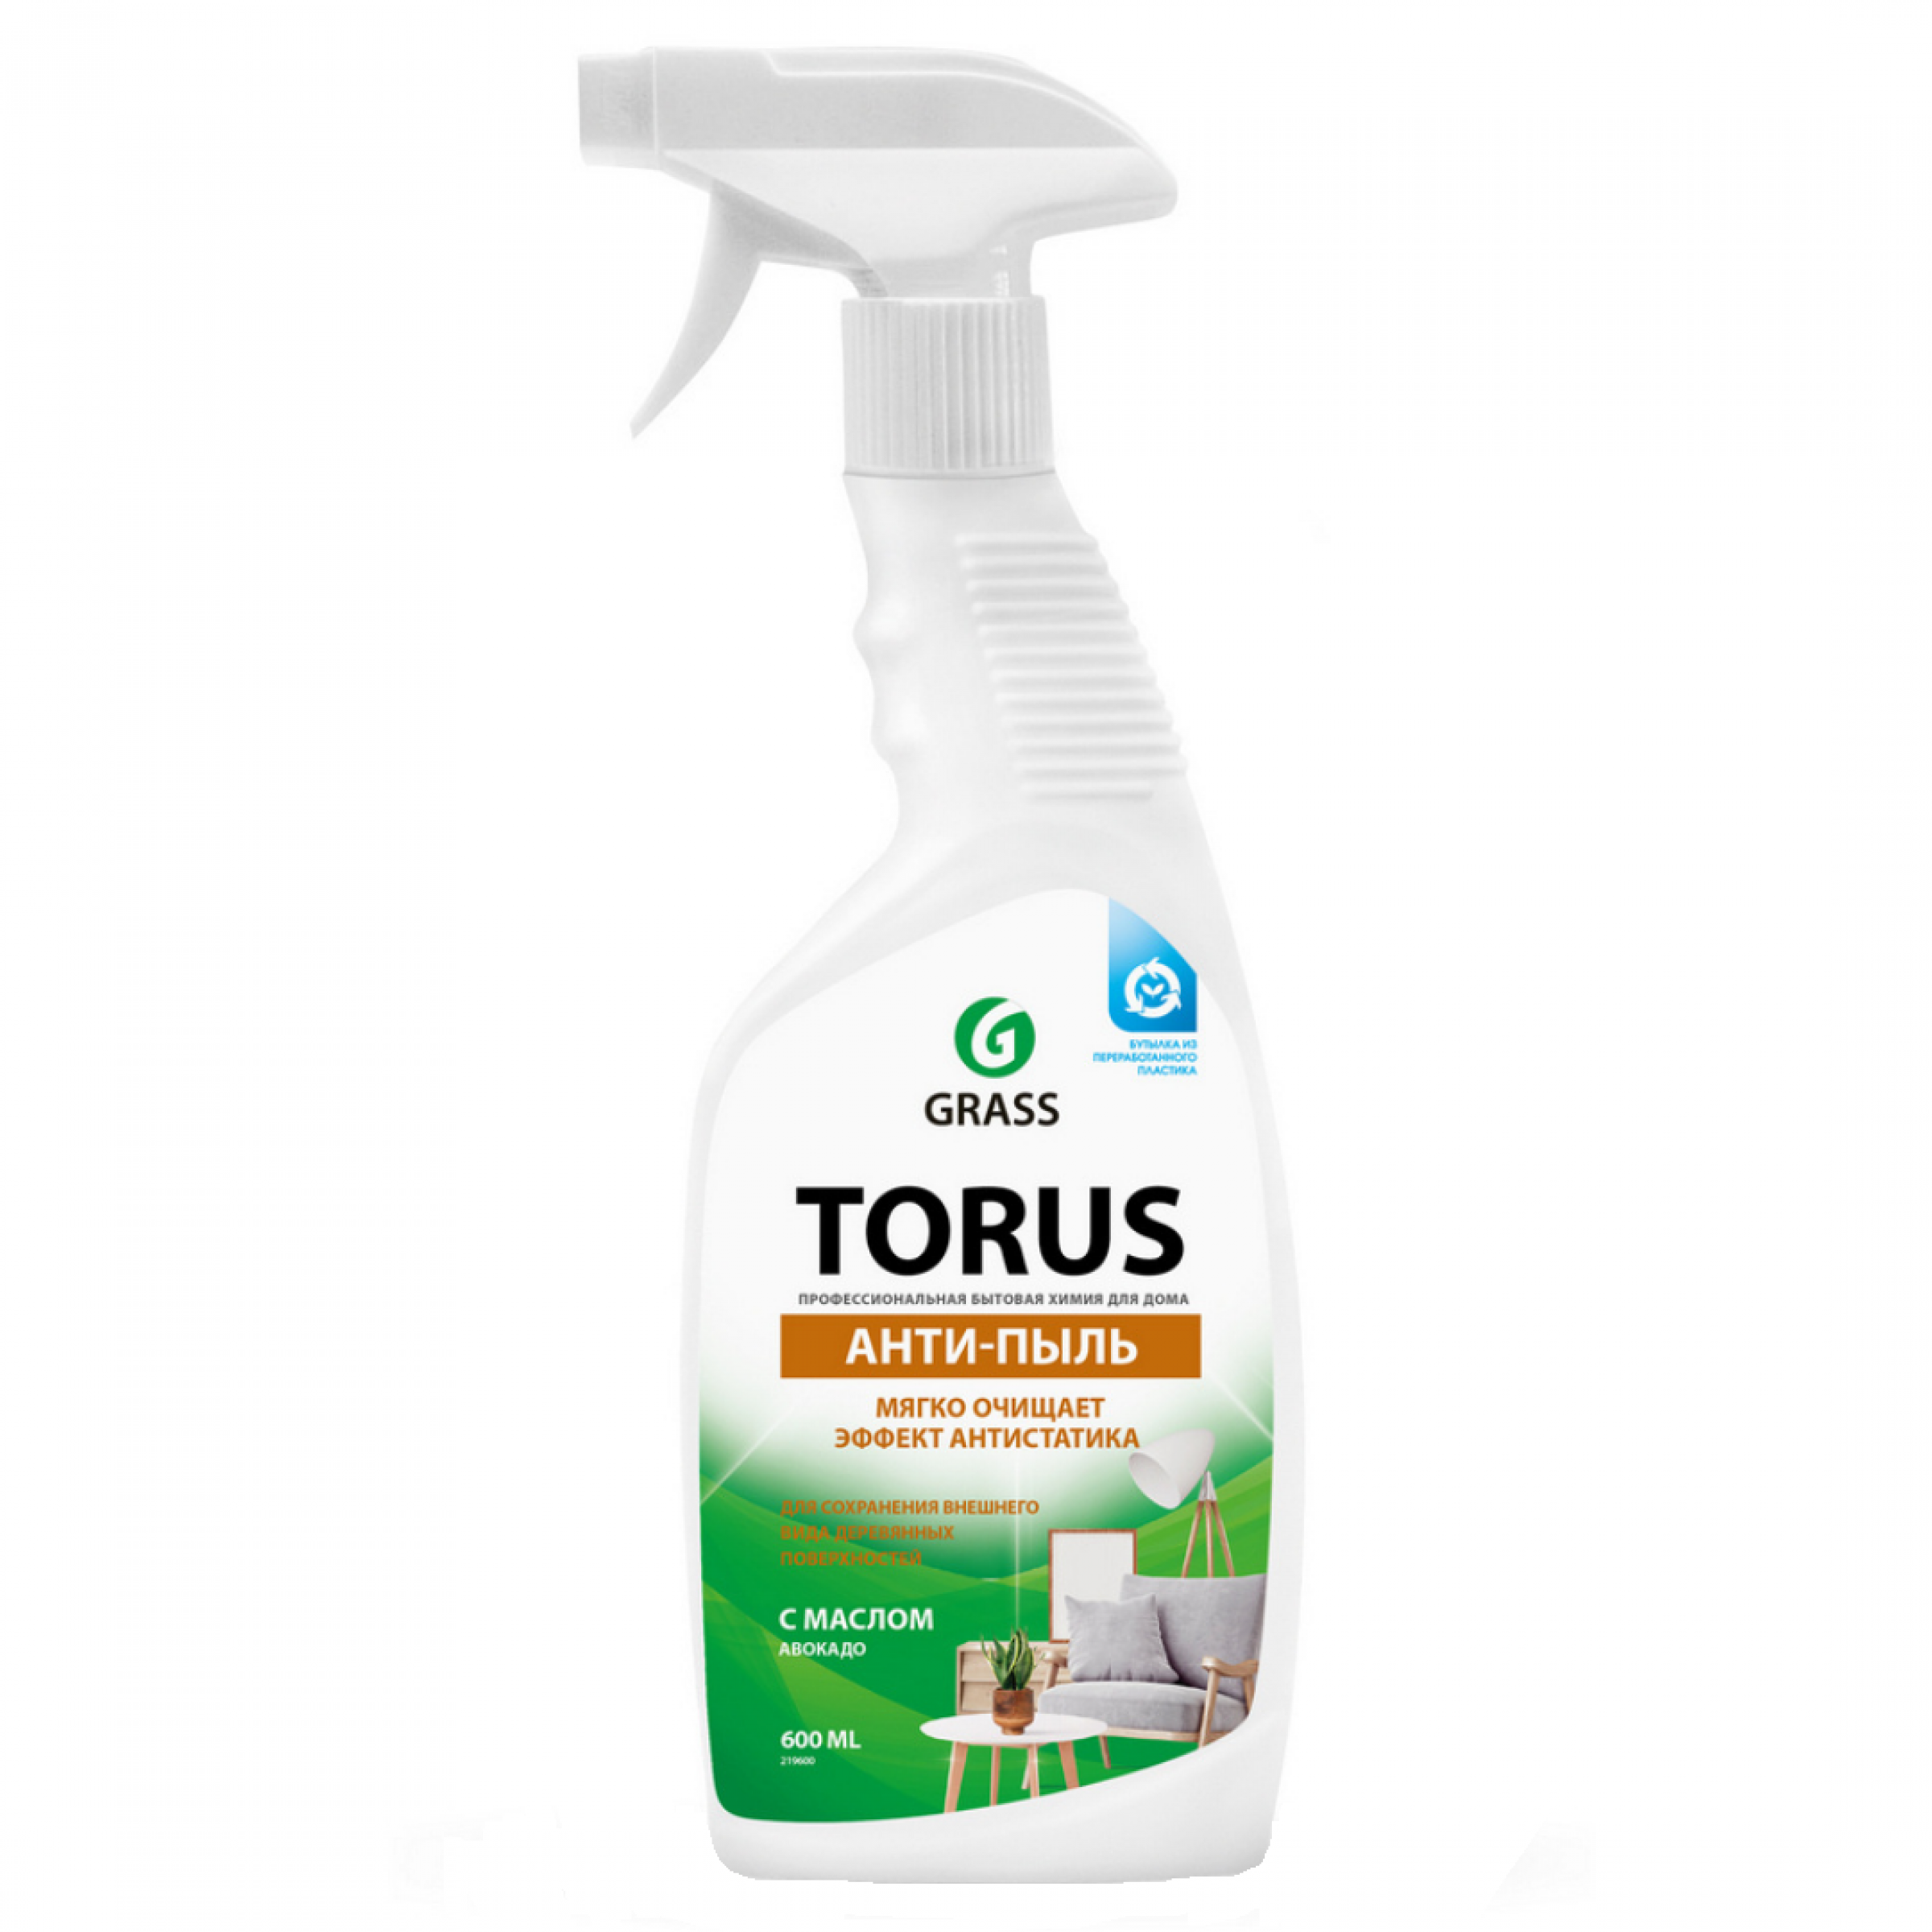 Очиститель-полироль для мебели Torus GRASS, 600мл